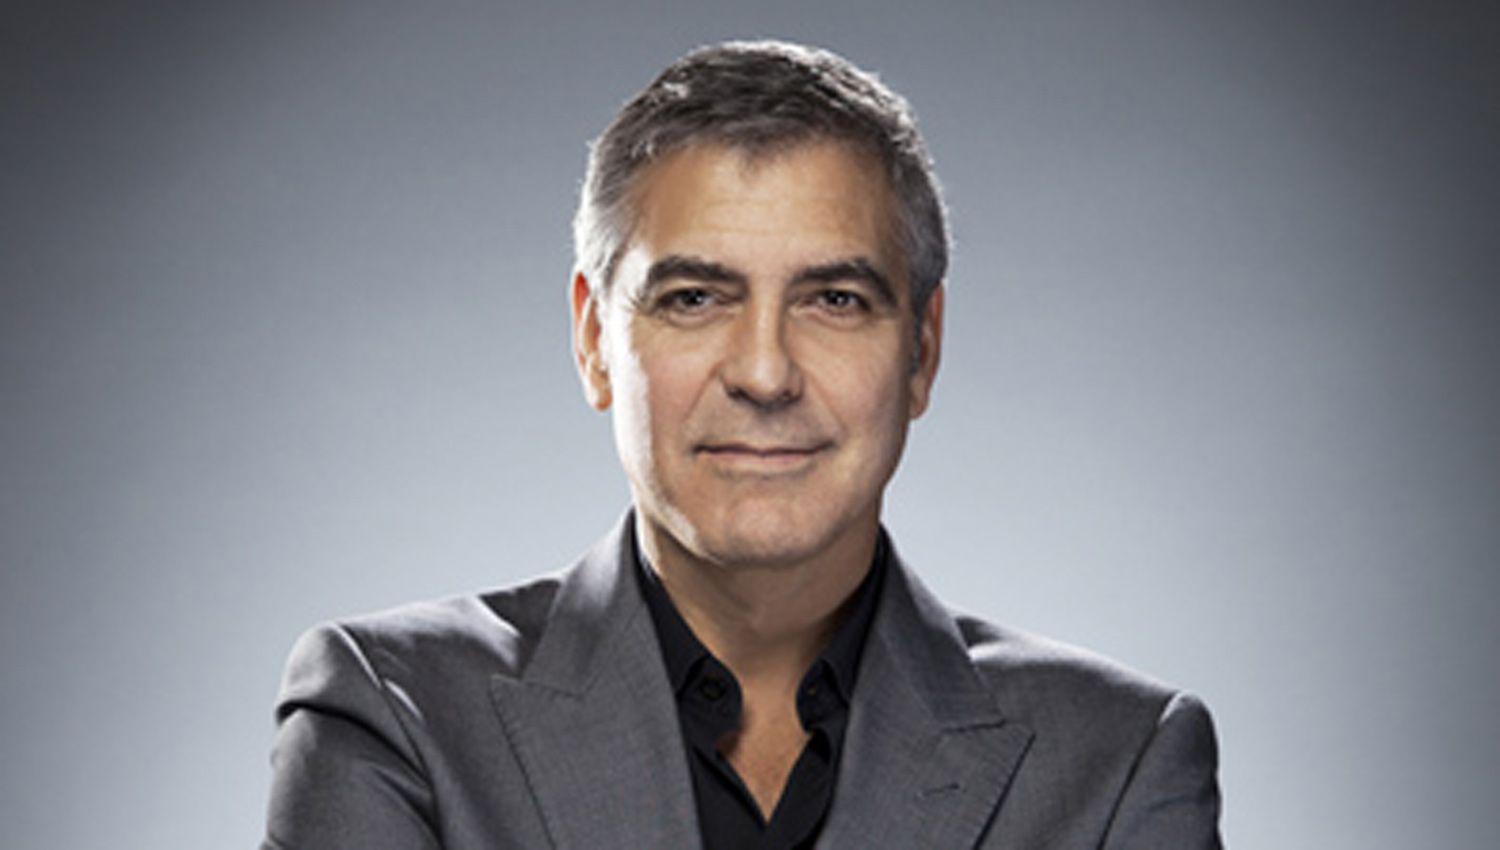 Clooney le dio 1 milloacuten de doacutelares a cada uno de sus 14 amigos en 2013